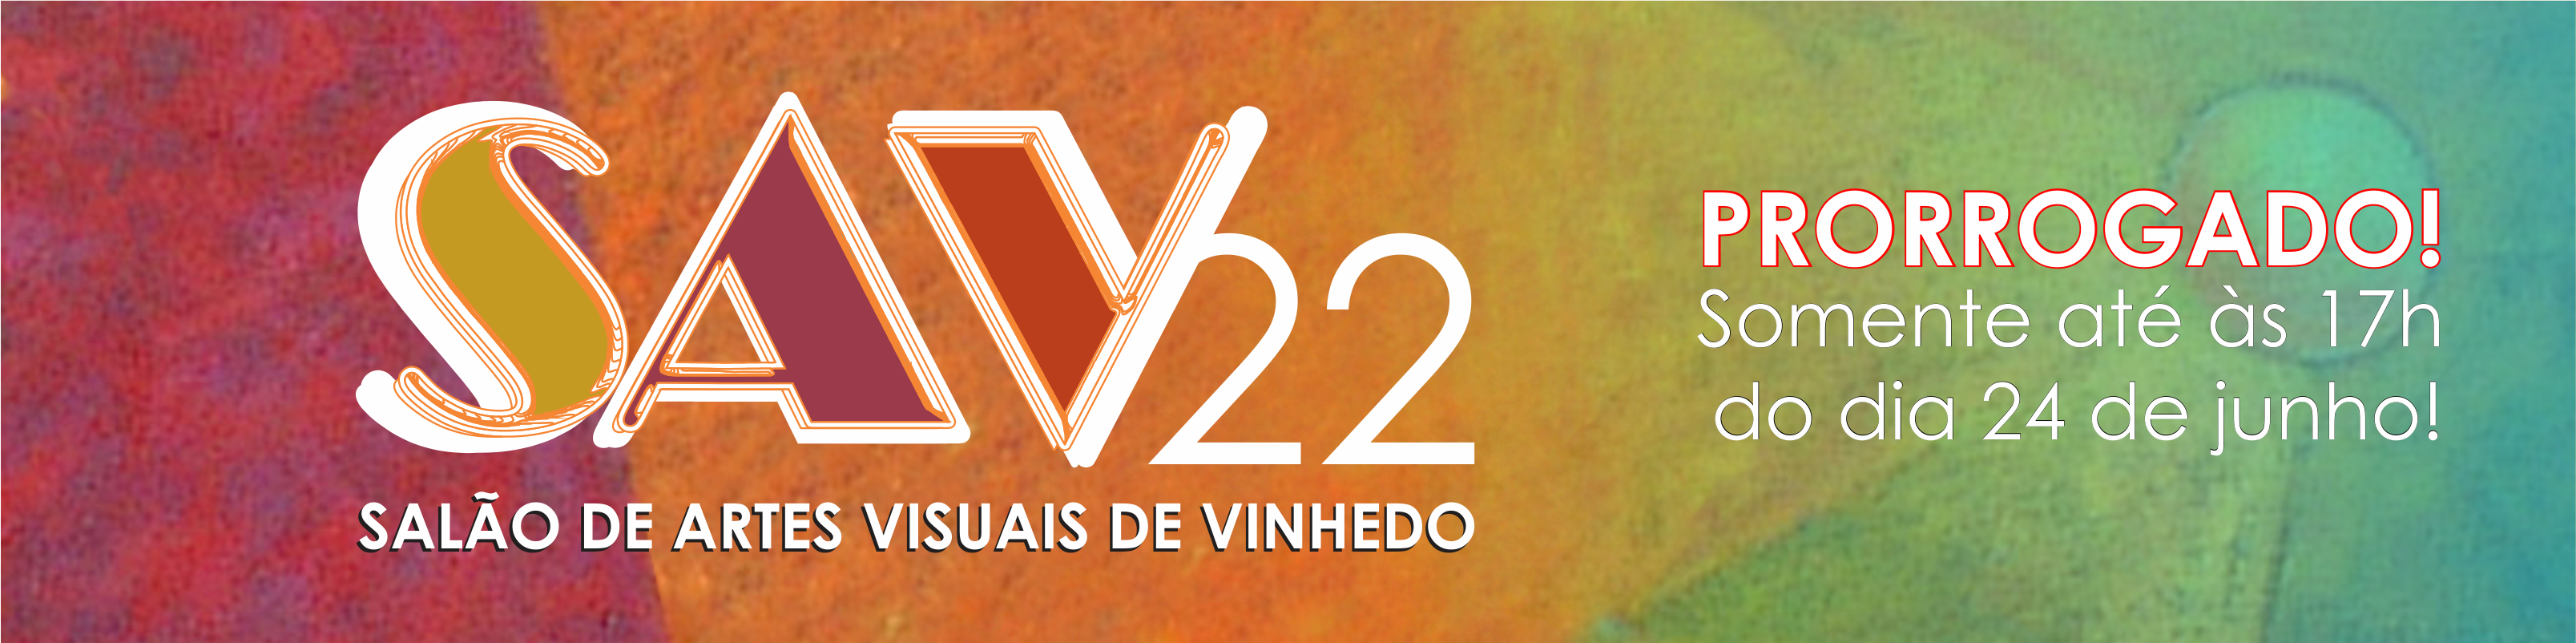 Topo Site SAV 2022 - prorrogação